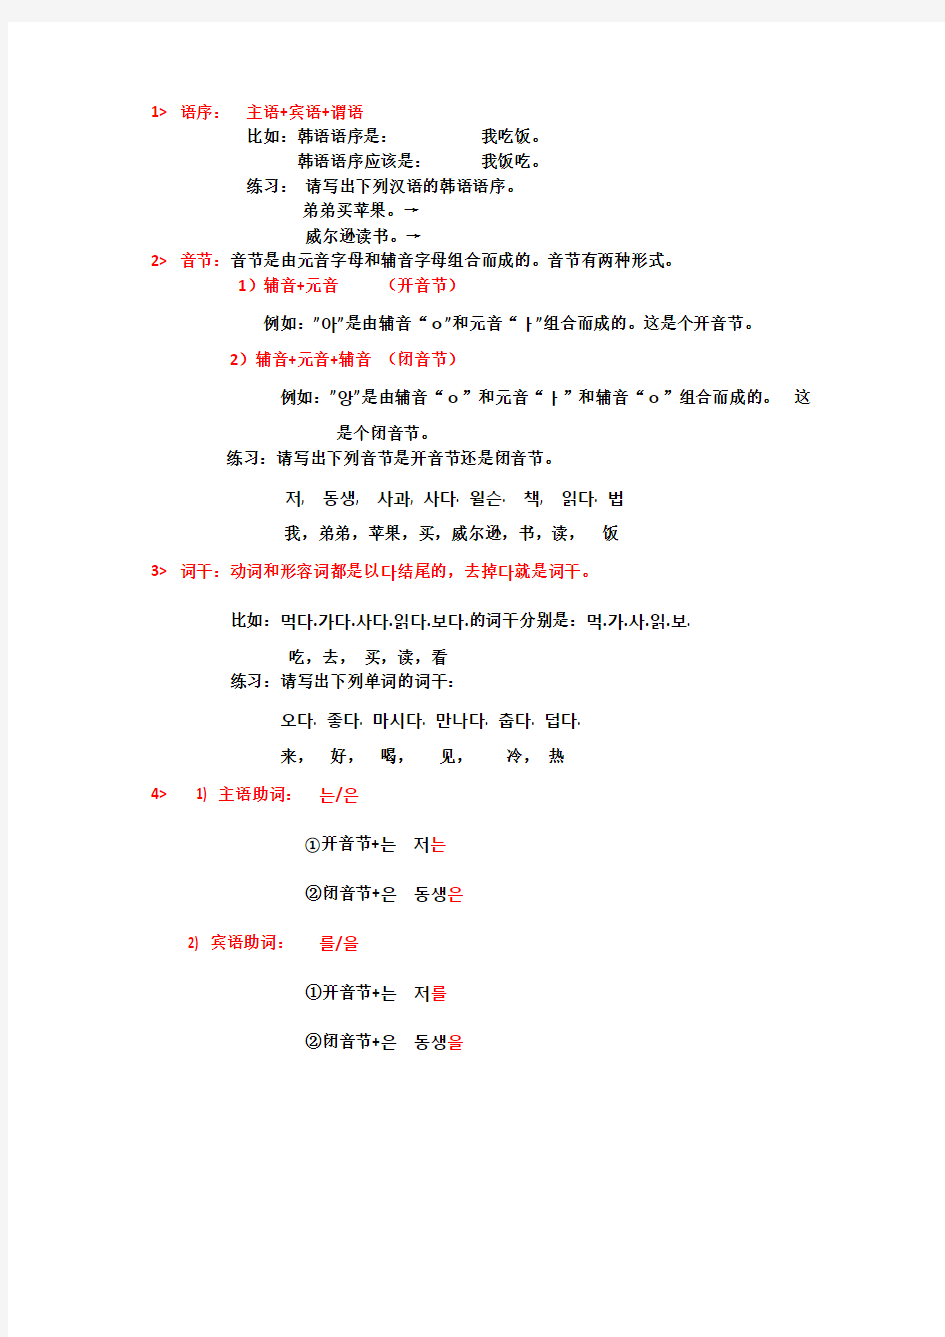 韩国语初级上册语法总结以及习题(完整版)